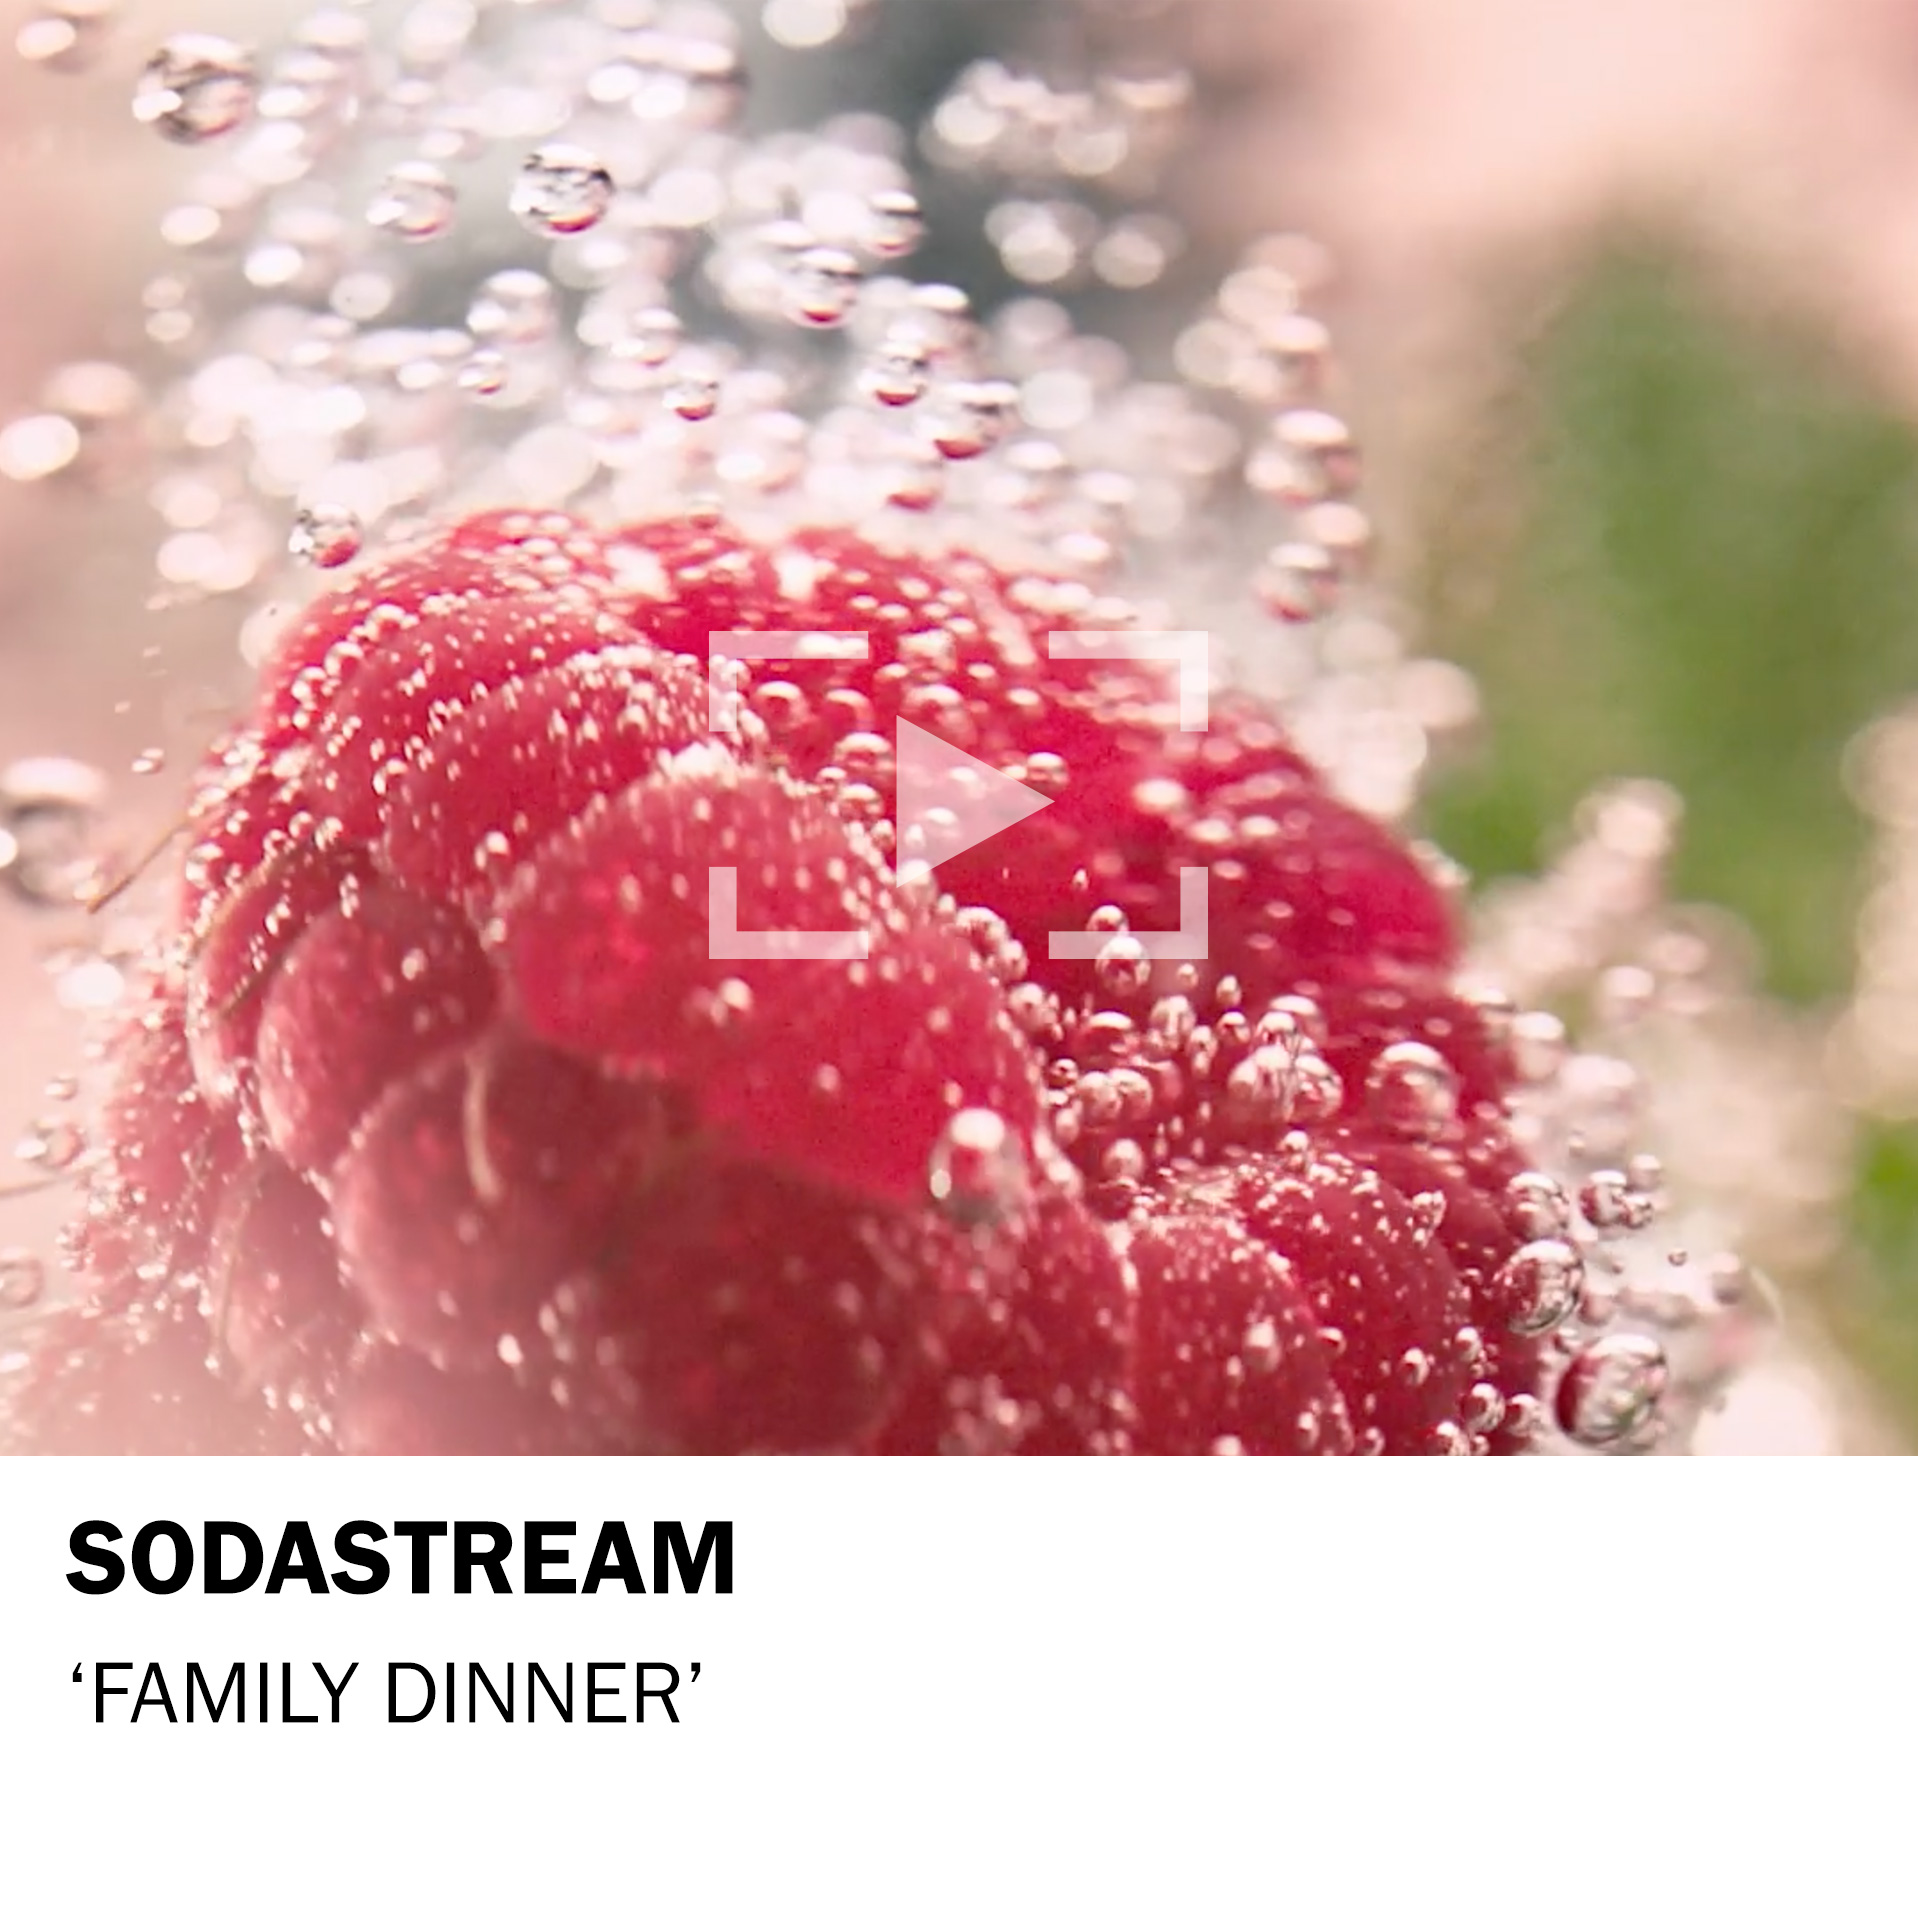 Sodastream – Family Dinner